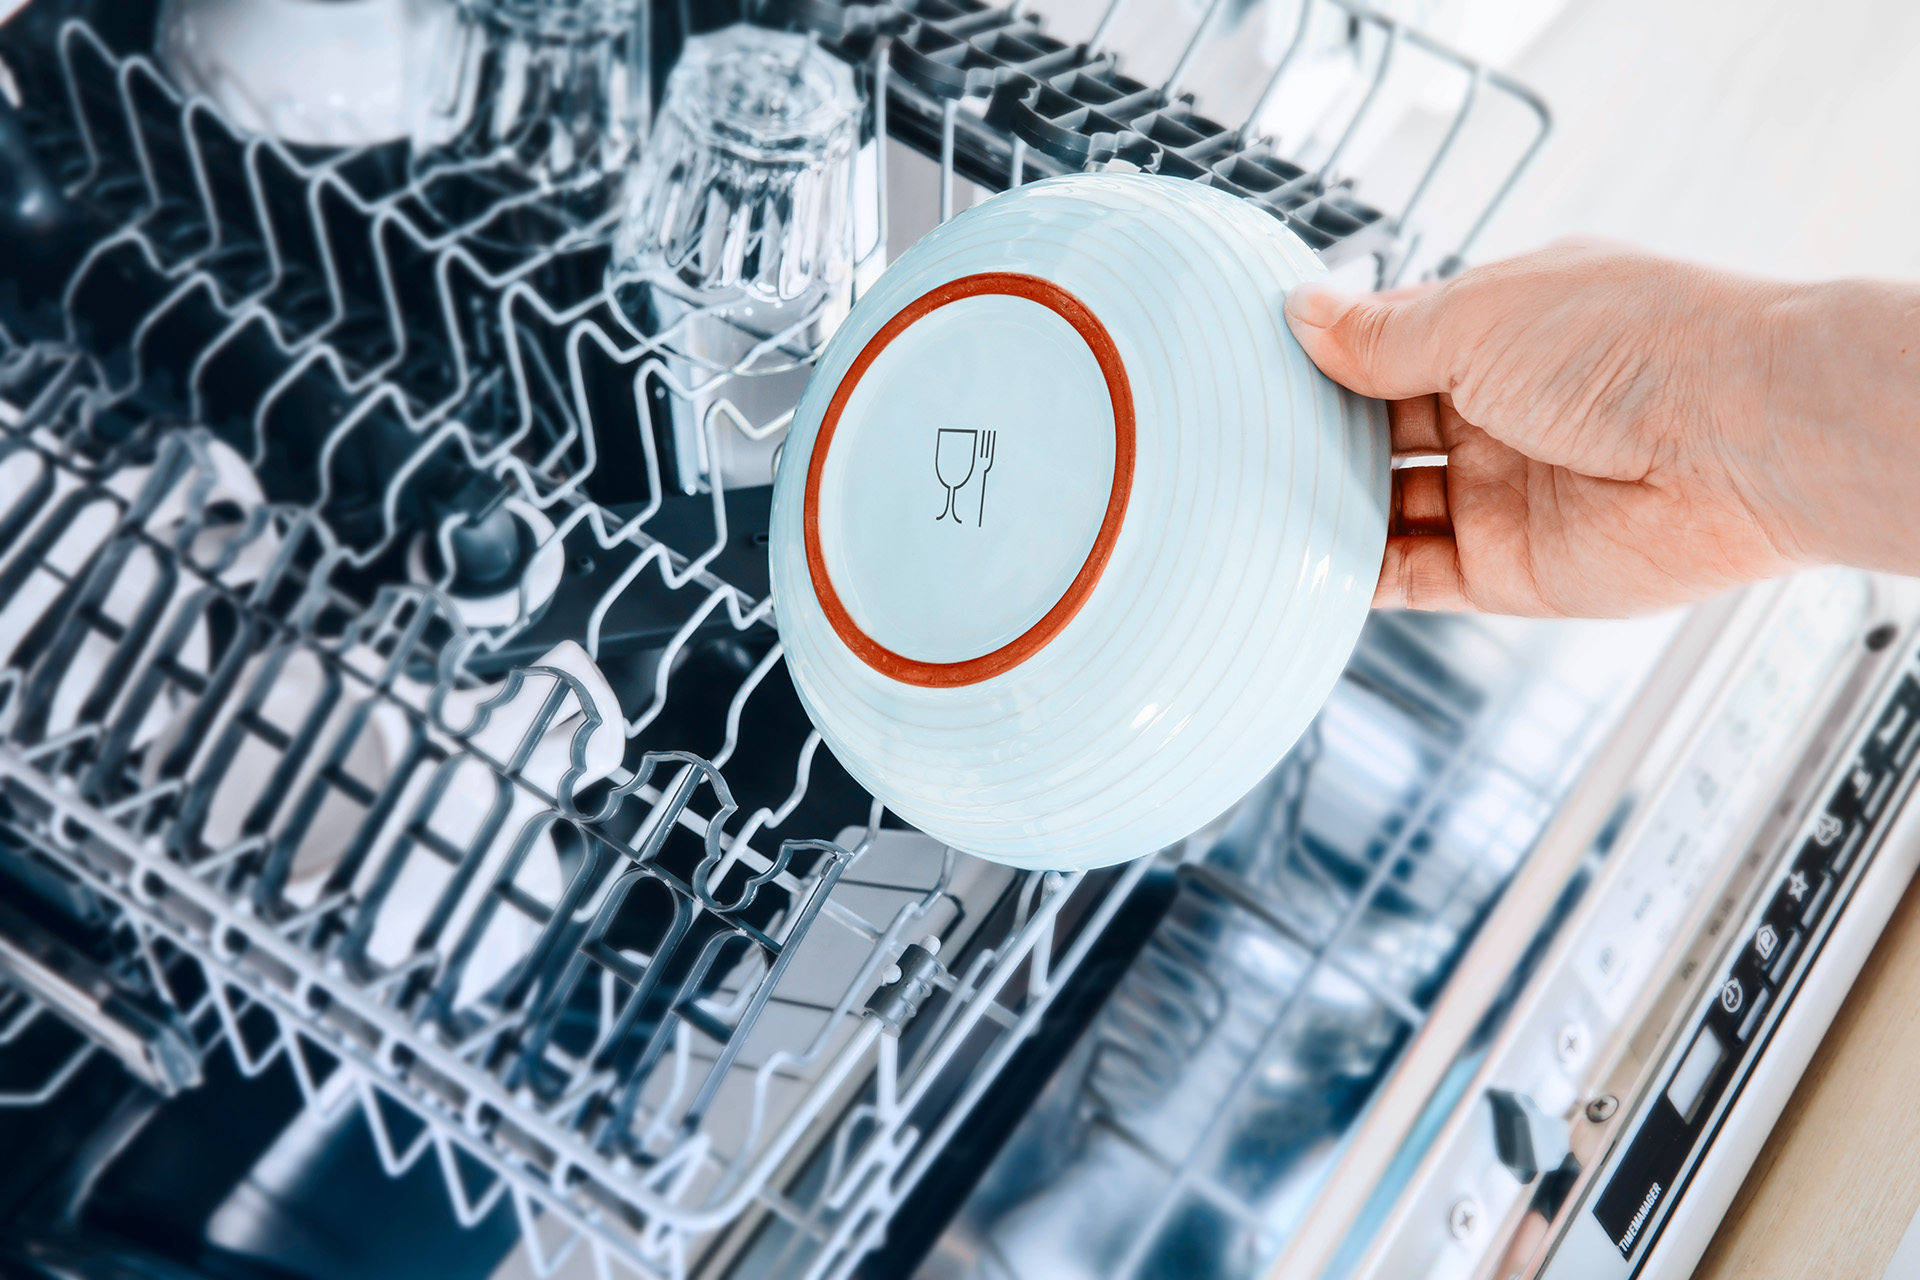 Dishwasher safe symbols explained